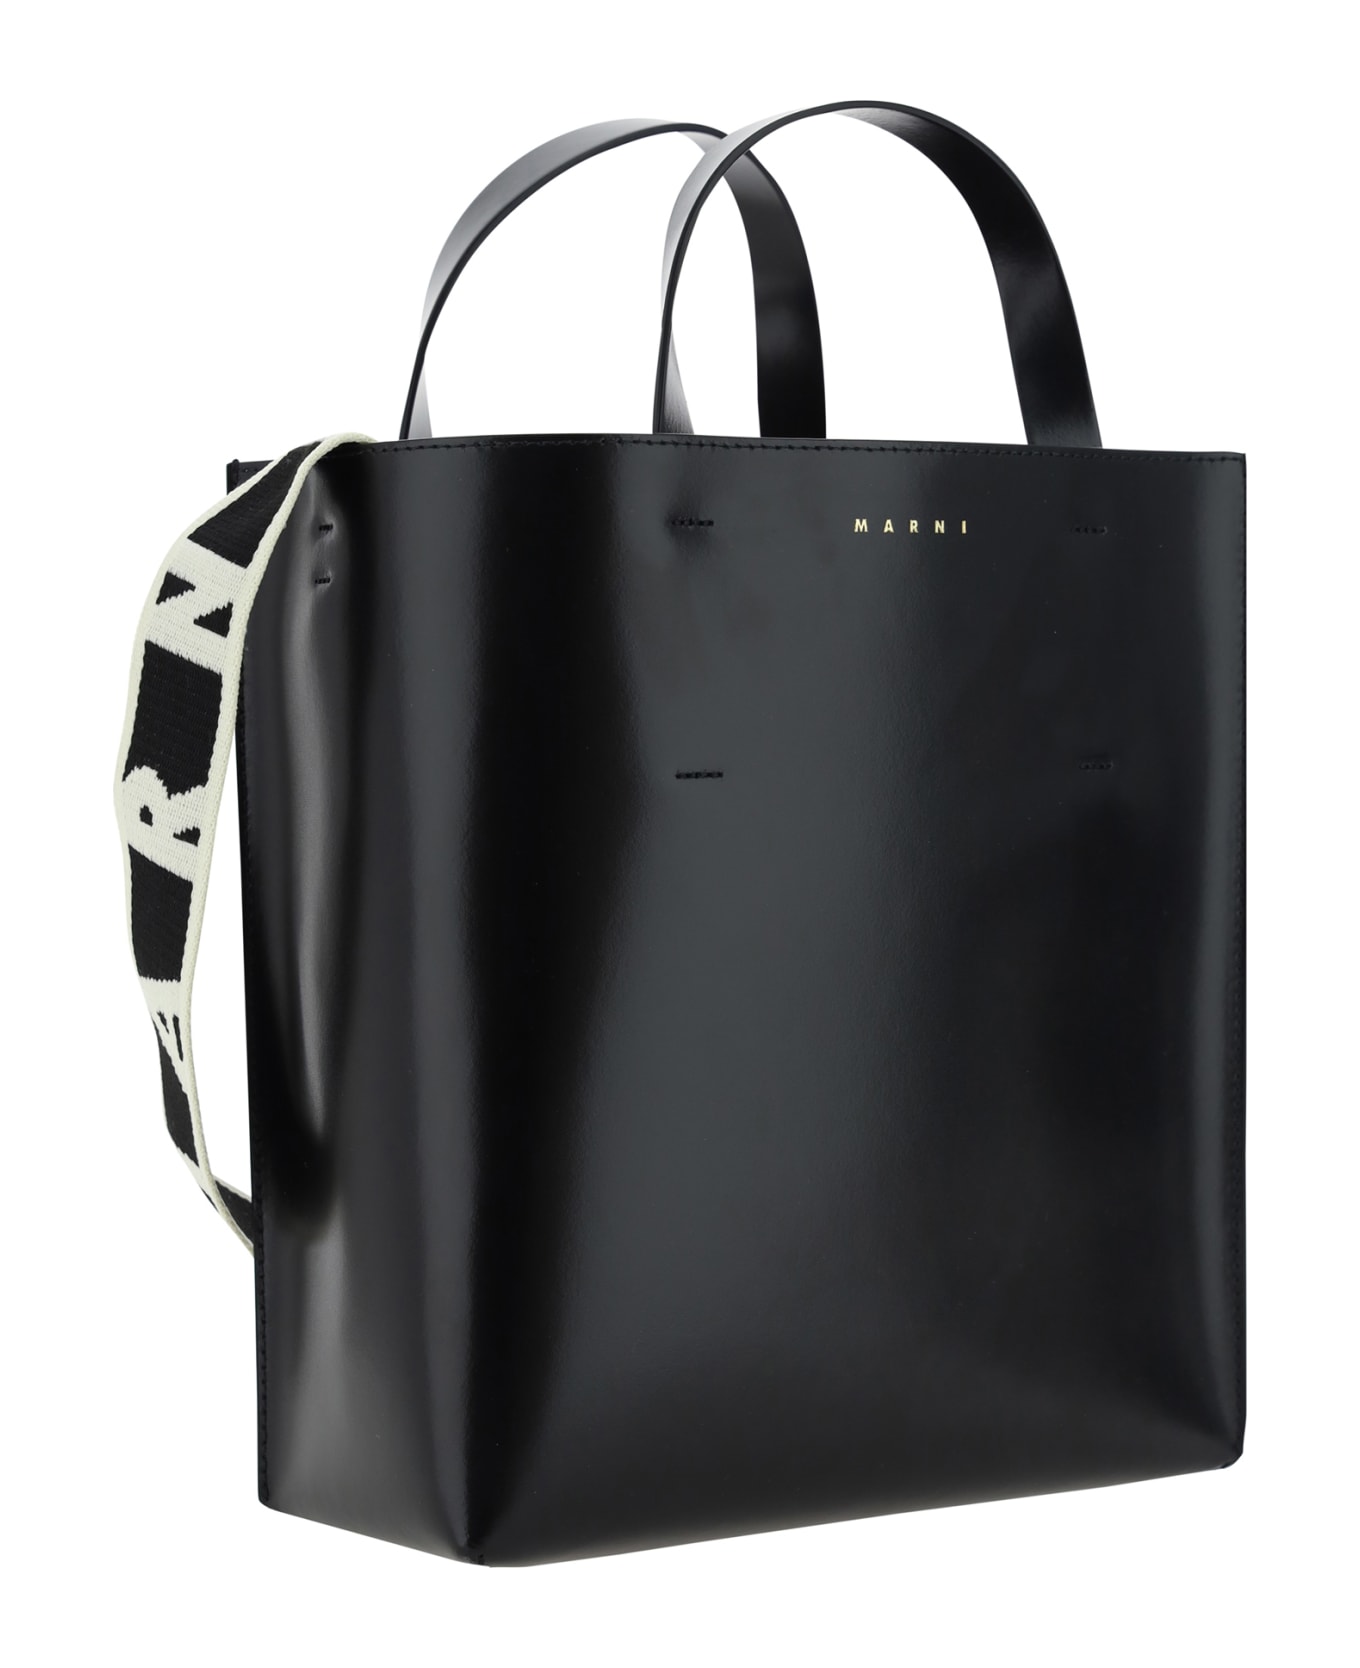 Marni Calfskin Museo Handbag By Marni - Black